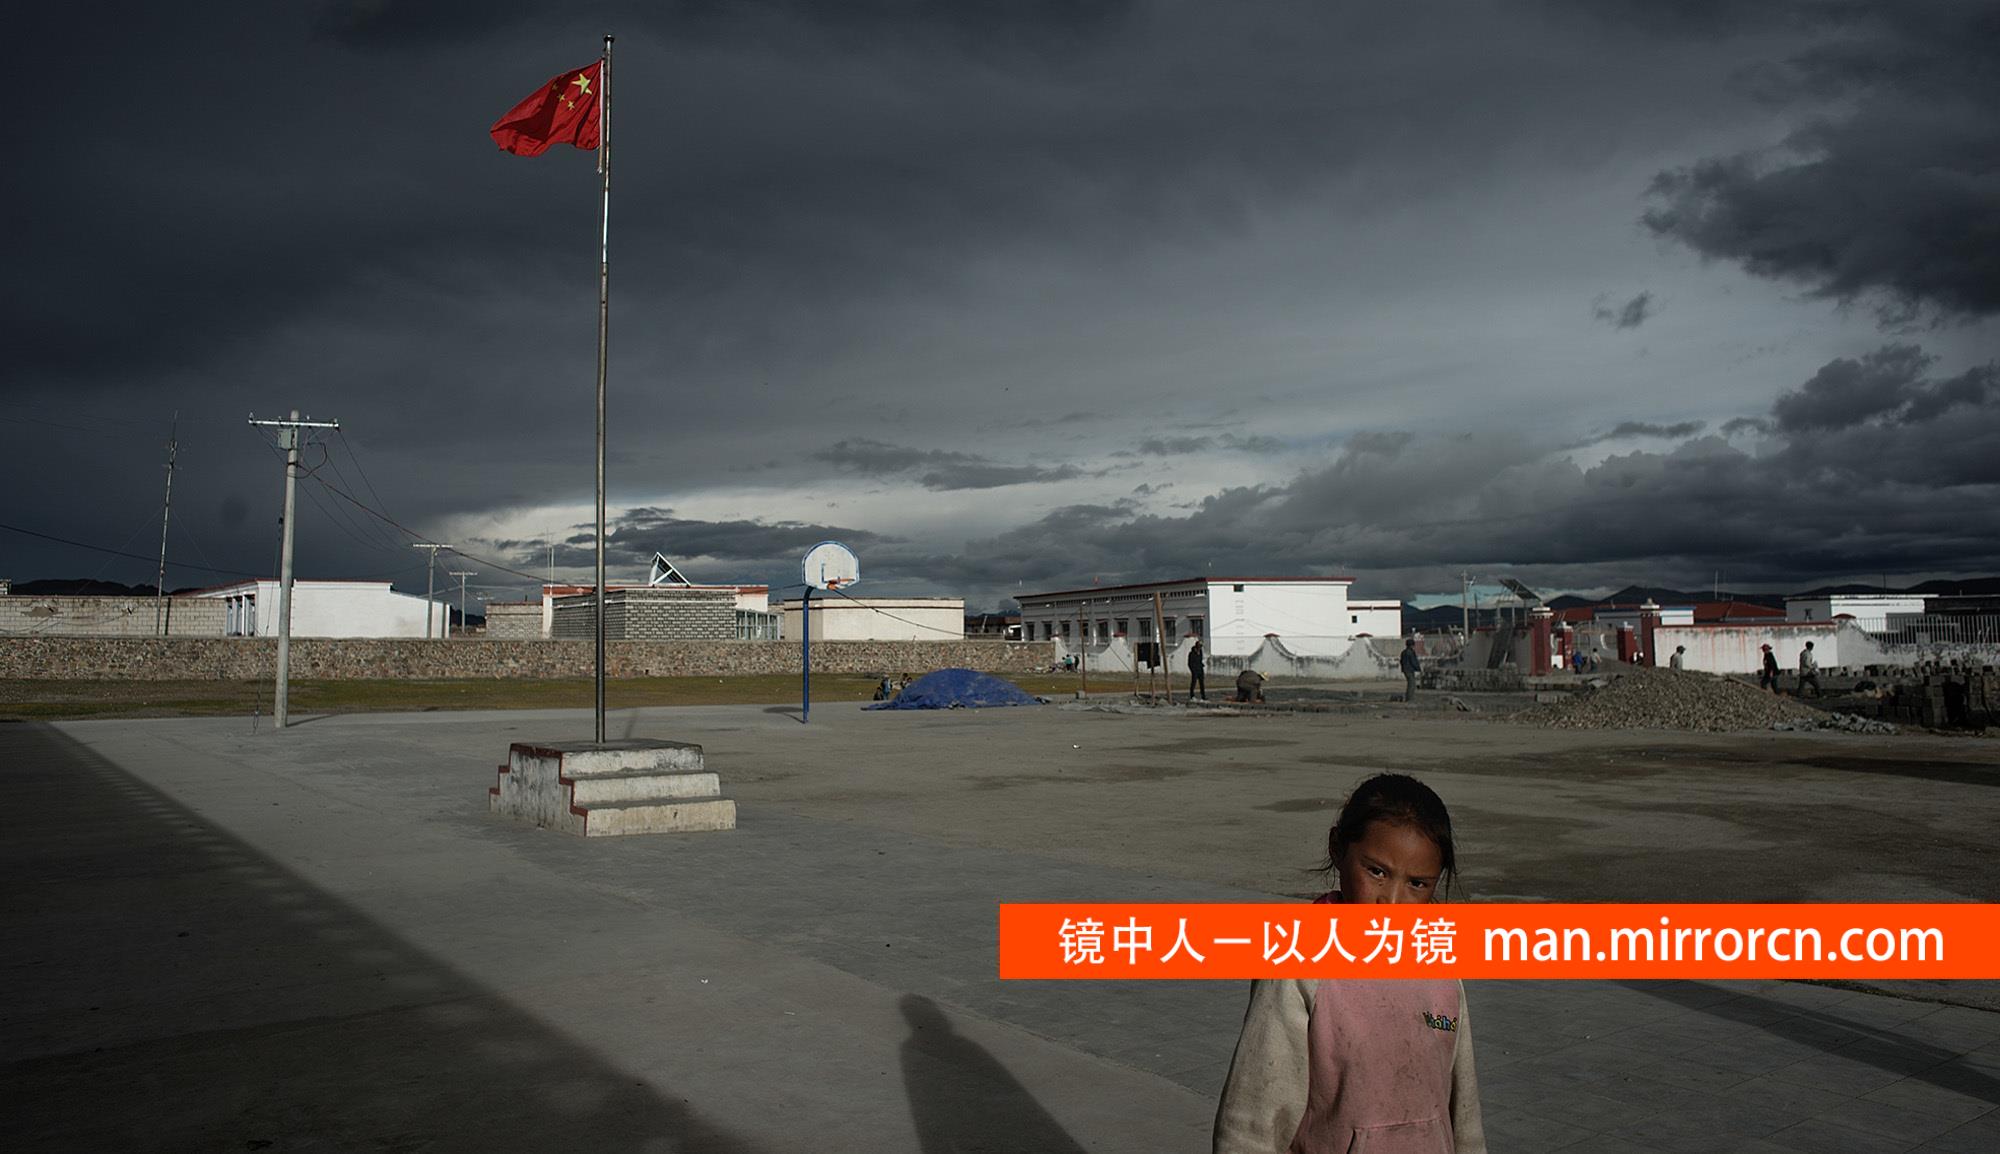 最高的学校 正能量 来到西藏普玛江塘乡，这里有世界海拔最高的村落，普玛江塘乡小学坐落在此。严重的缺氧，让生存变得十分严峻，更让在这学习变得相当艰难。